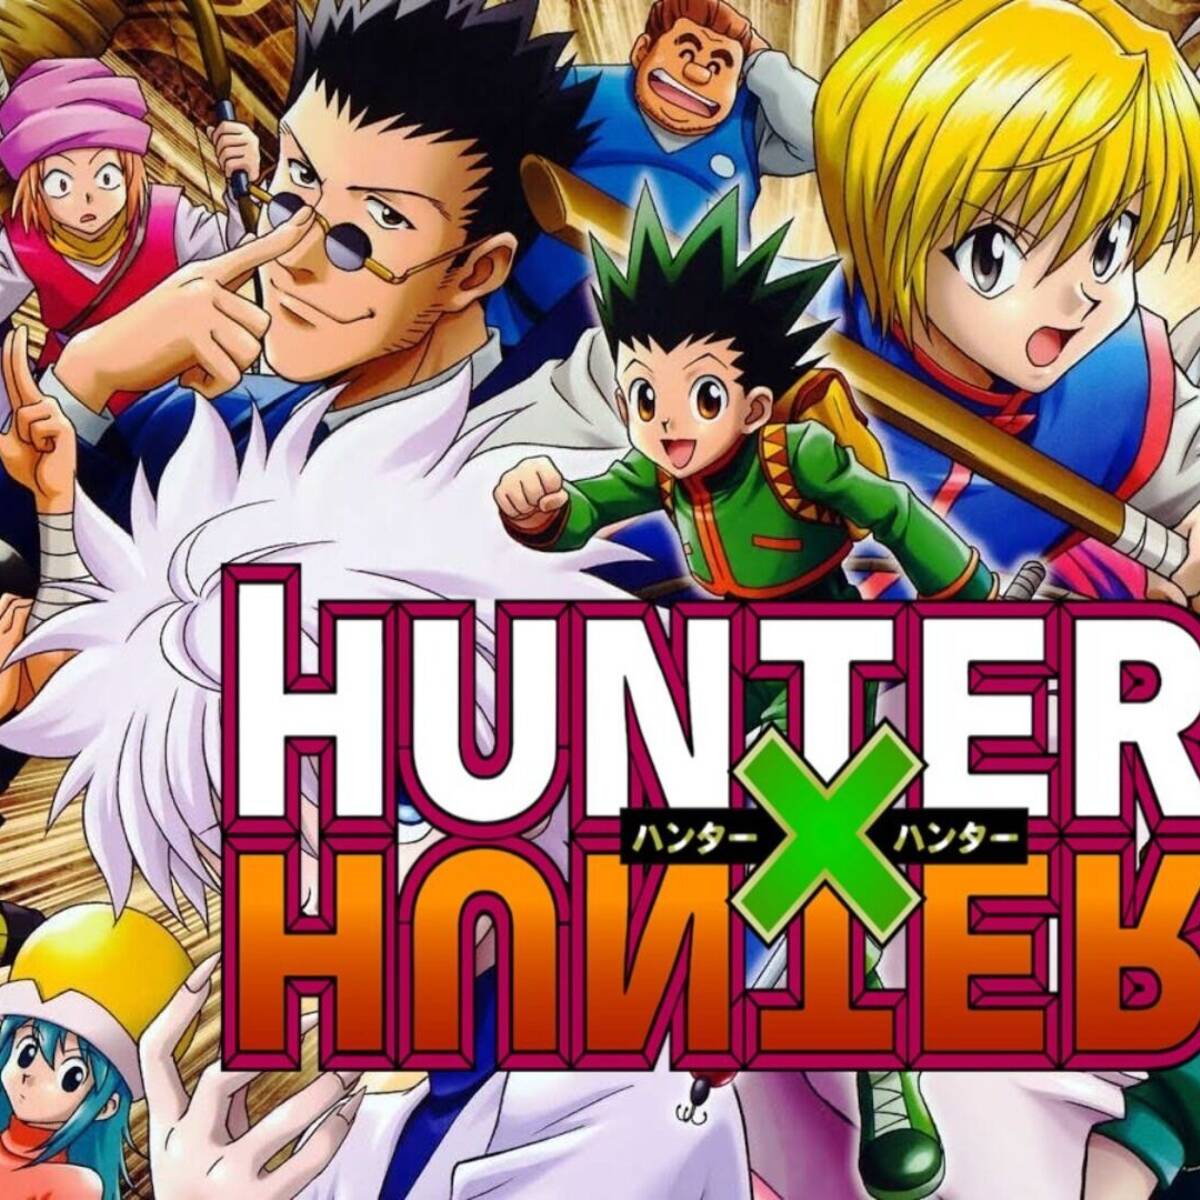 El manga de Hunter X Hunter vuelve a publicarse el 26 de junio :_D